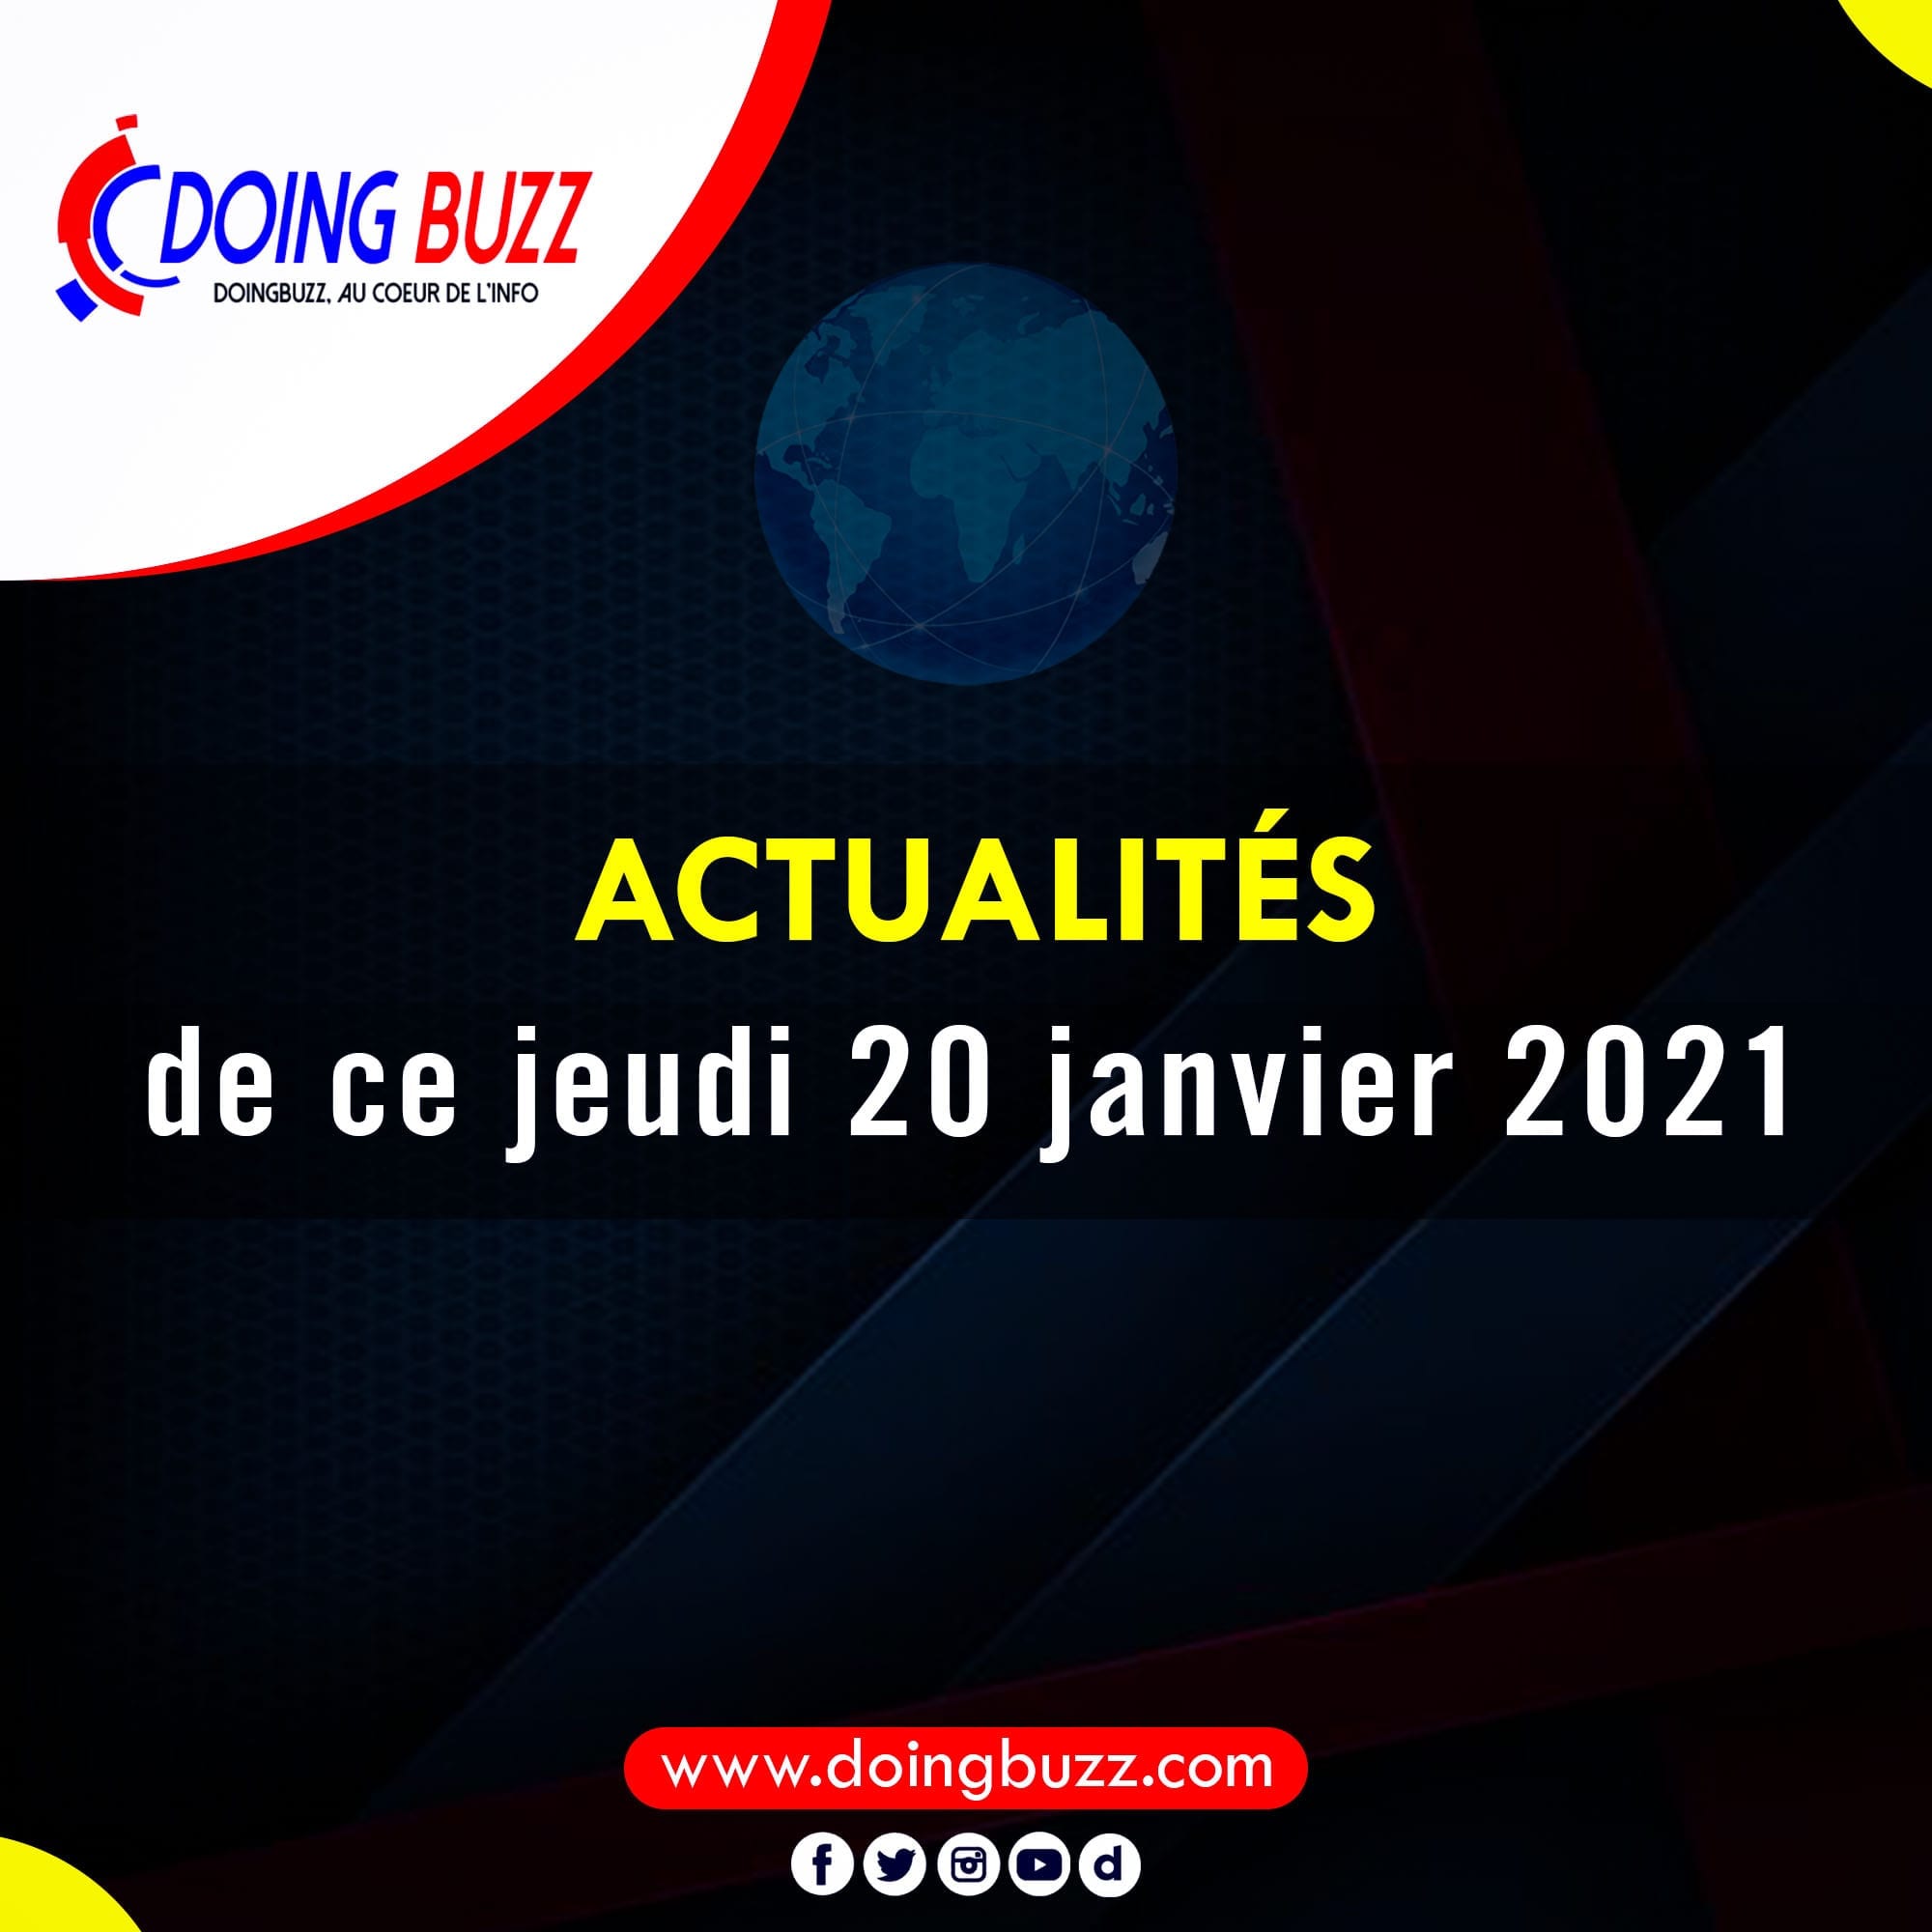 Actualités Du Jour Sur Doingbuzz: Jeudi Le 21 Janvier 2021